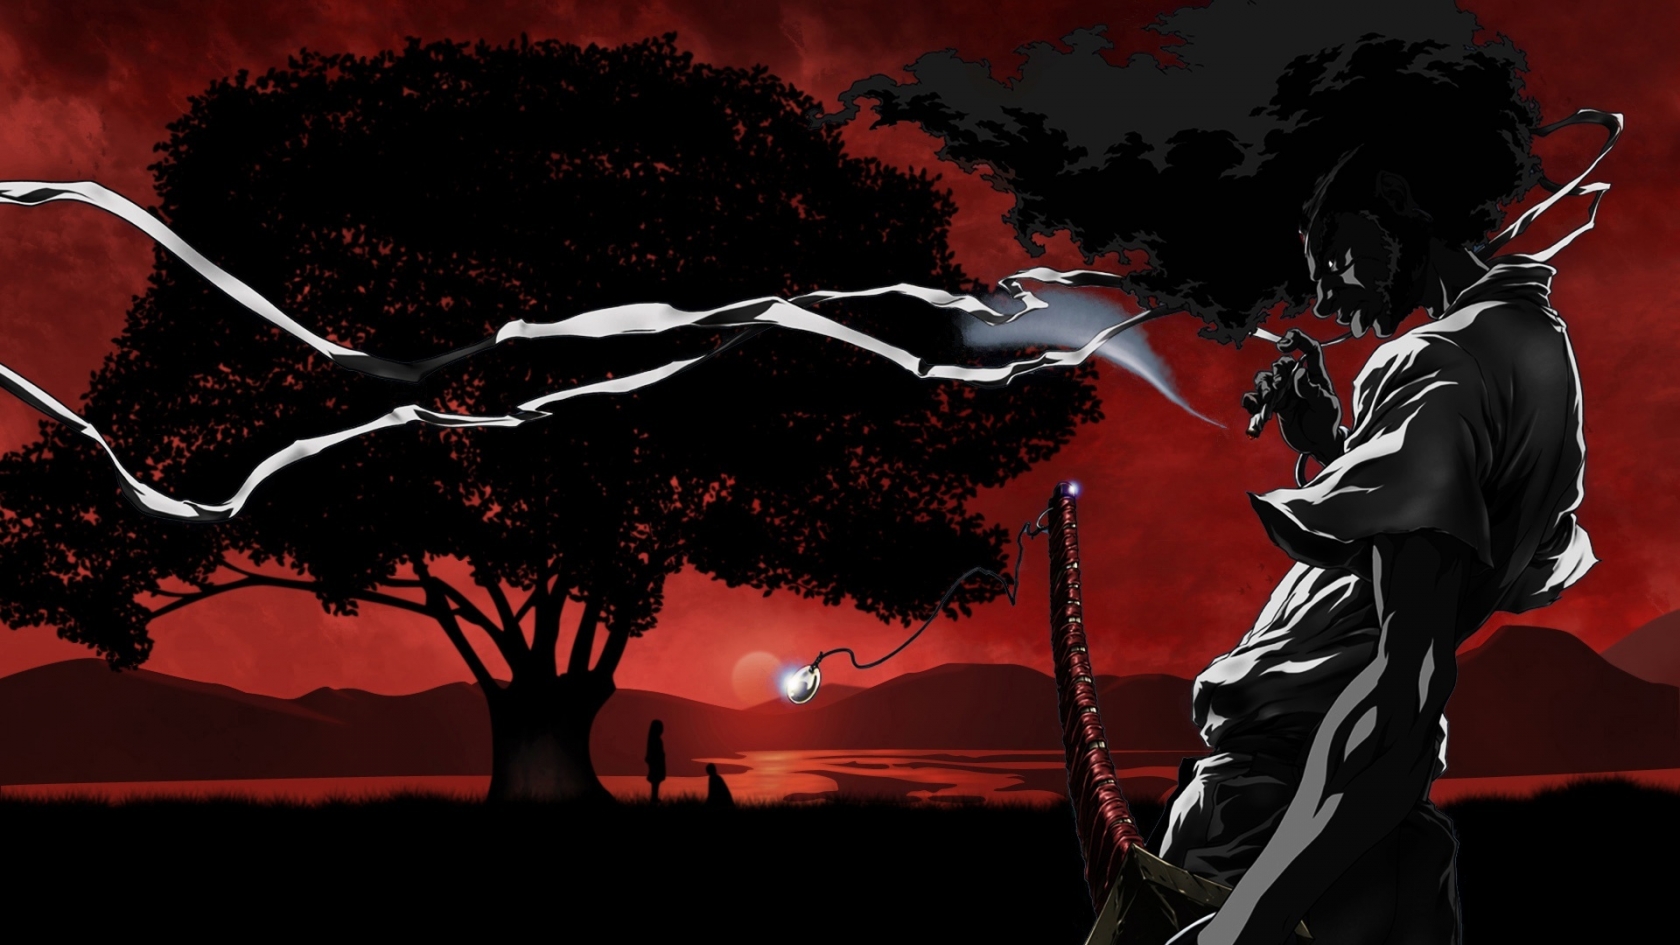 Sundown Afro Samurai for 1680 x 945 HDTV resolution